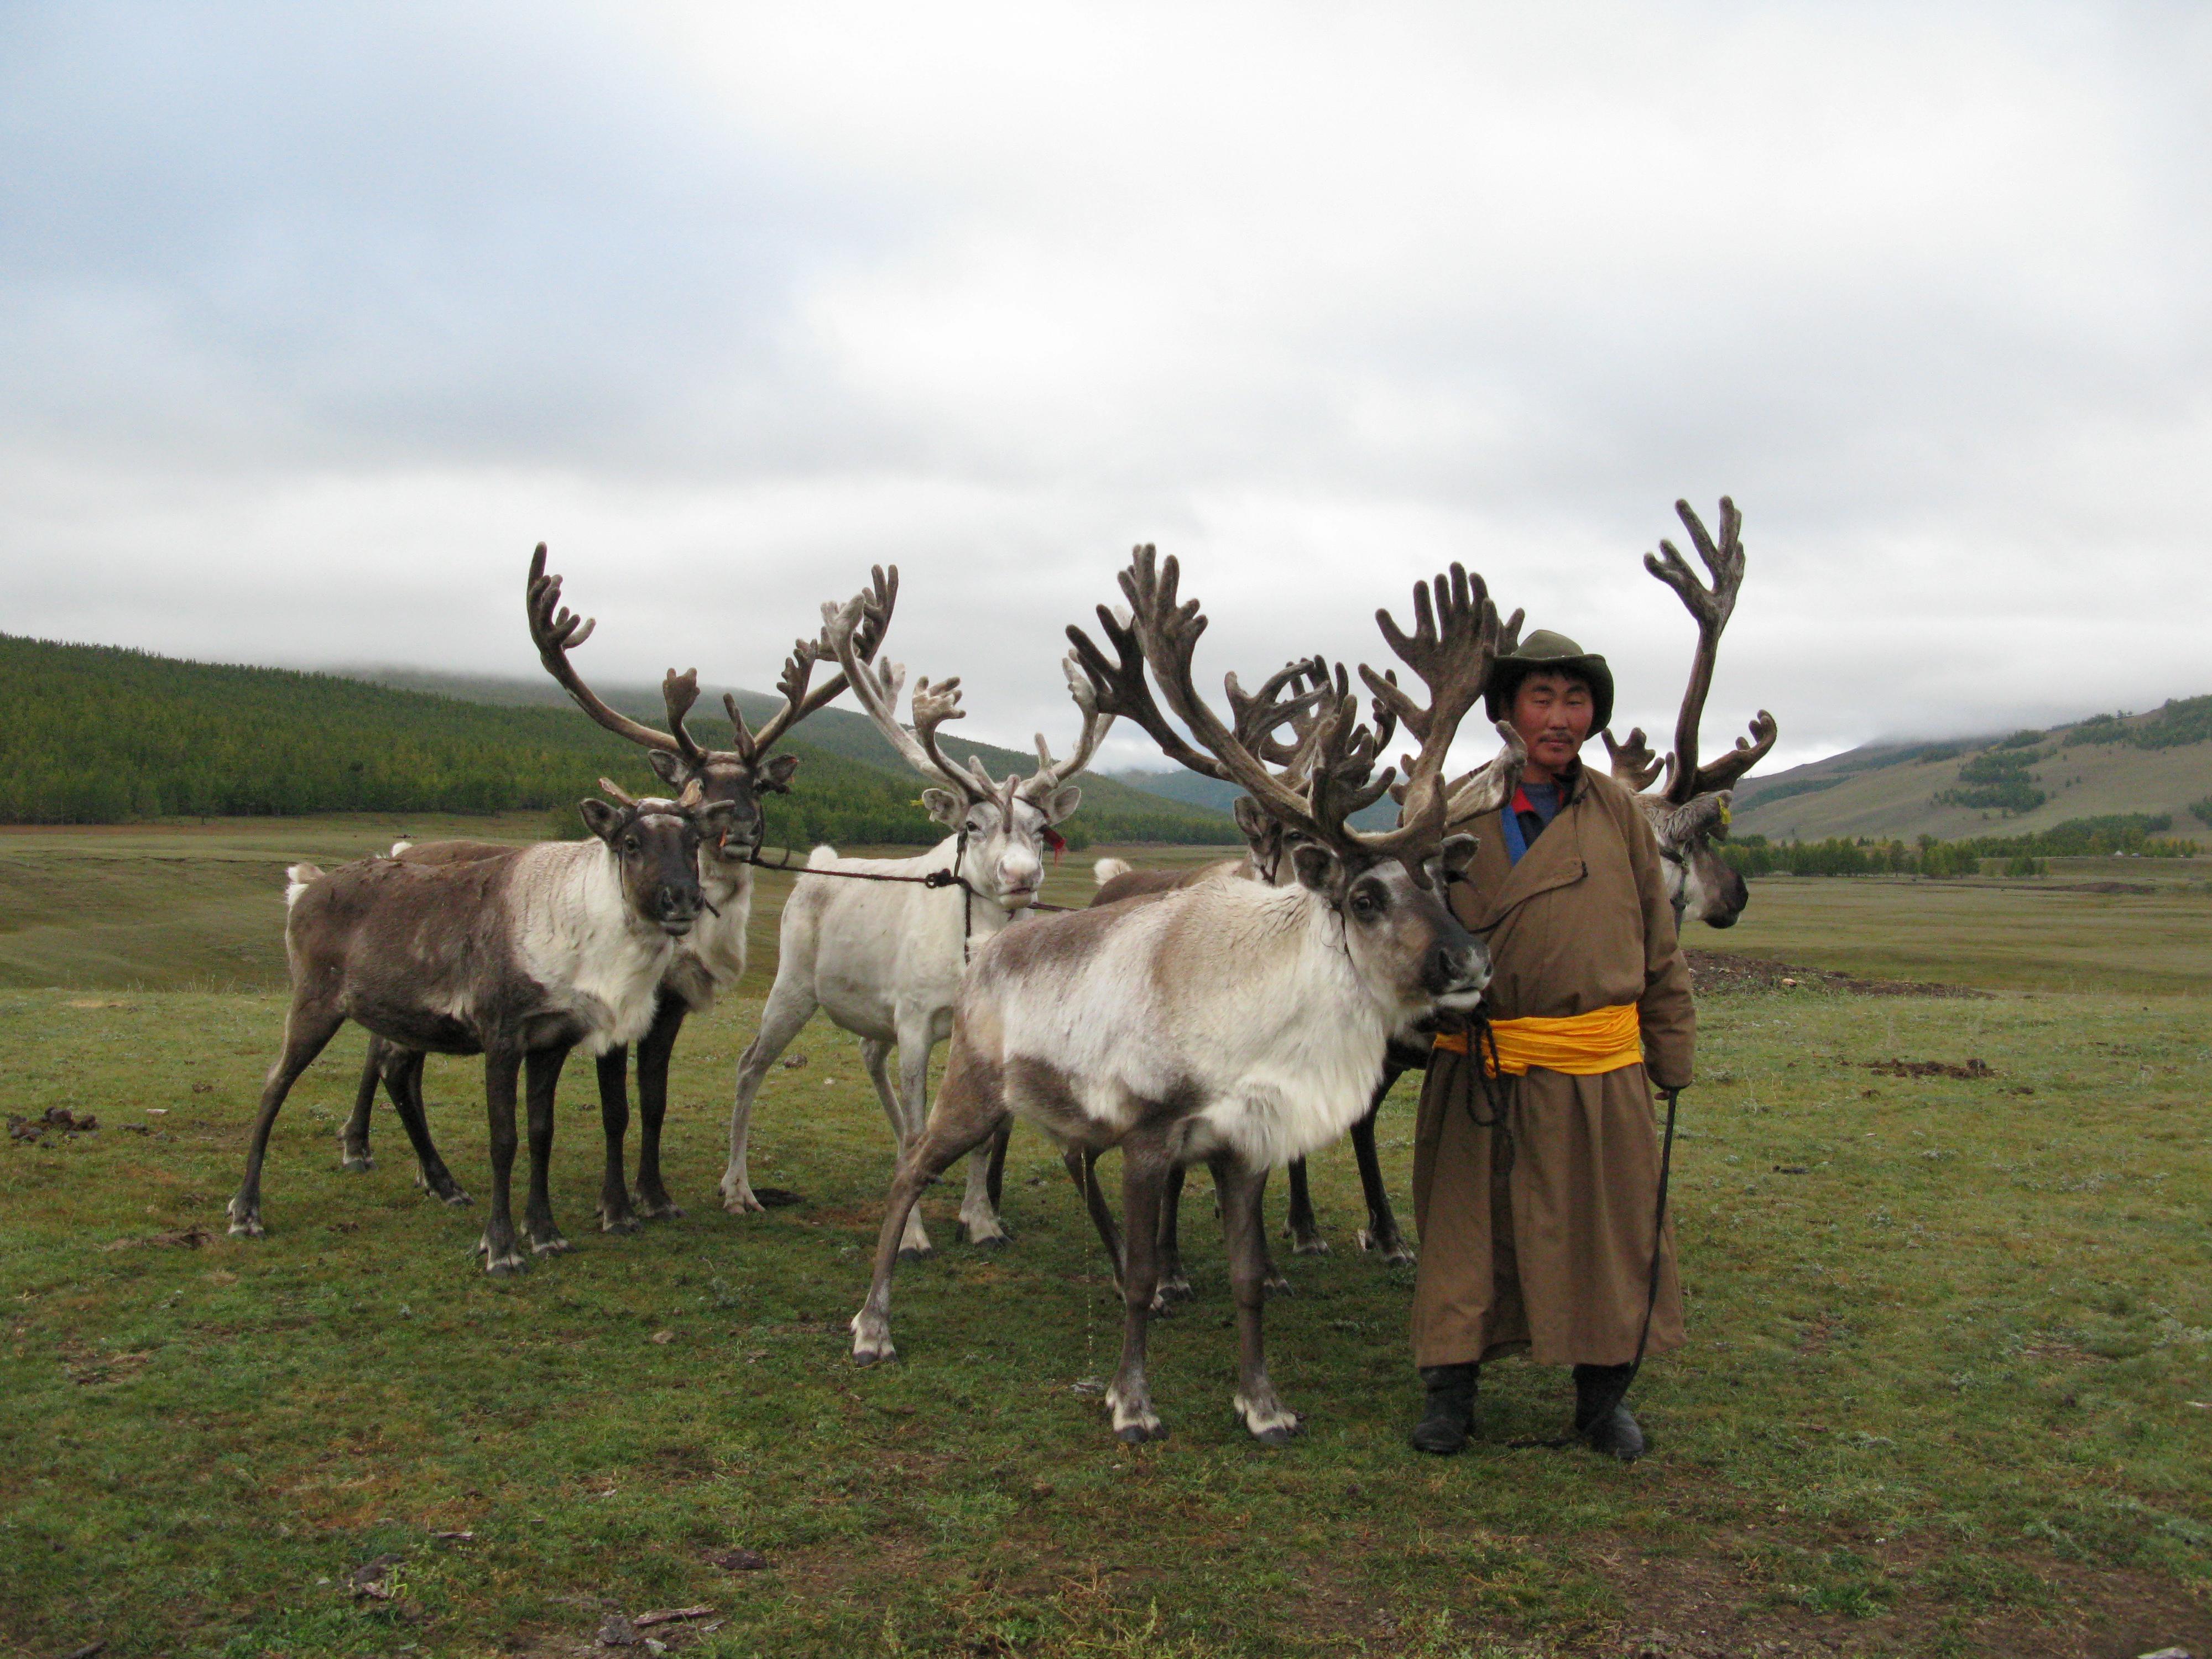 مرشد تساتان أميرجيرال (ويُسمى خالزان) مع الرنة، وادي دارخاد، شمال منغوليا، سبتمبر 2009. 
صورة من: 
بولا ديبريست، معهد الحفاظ على المتاحف، مؤسسة سميثسونيان.
